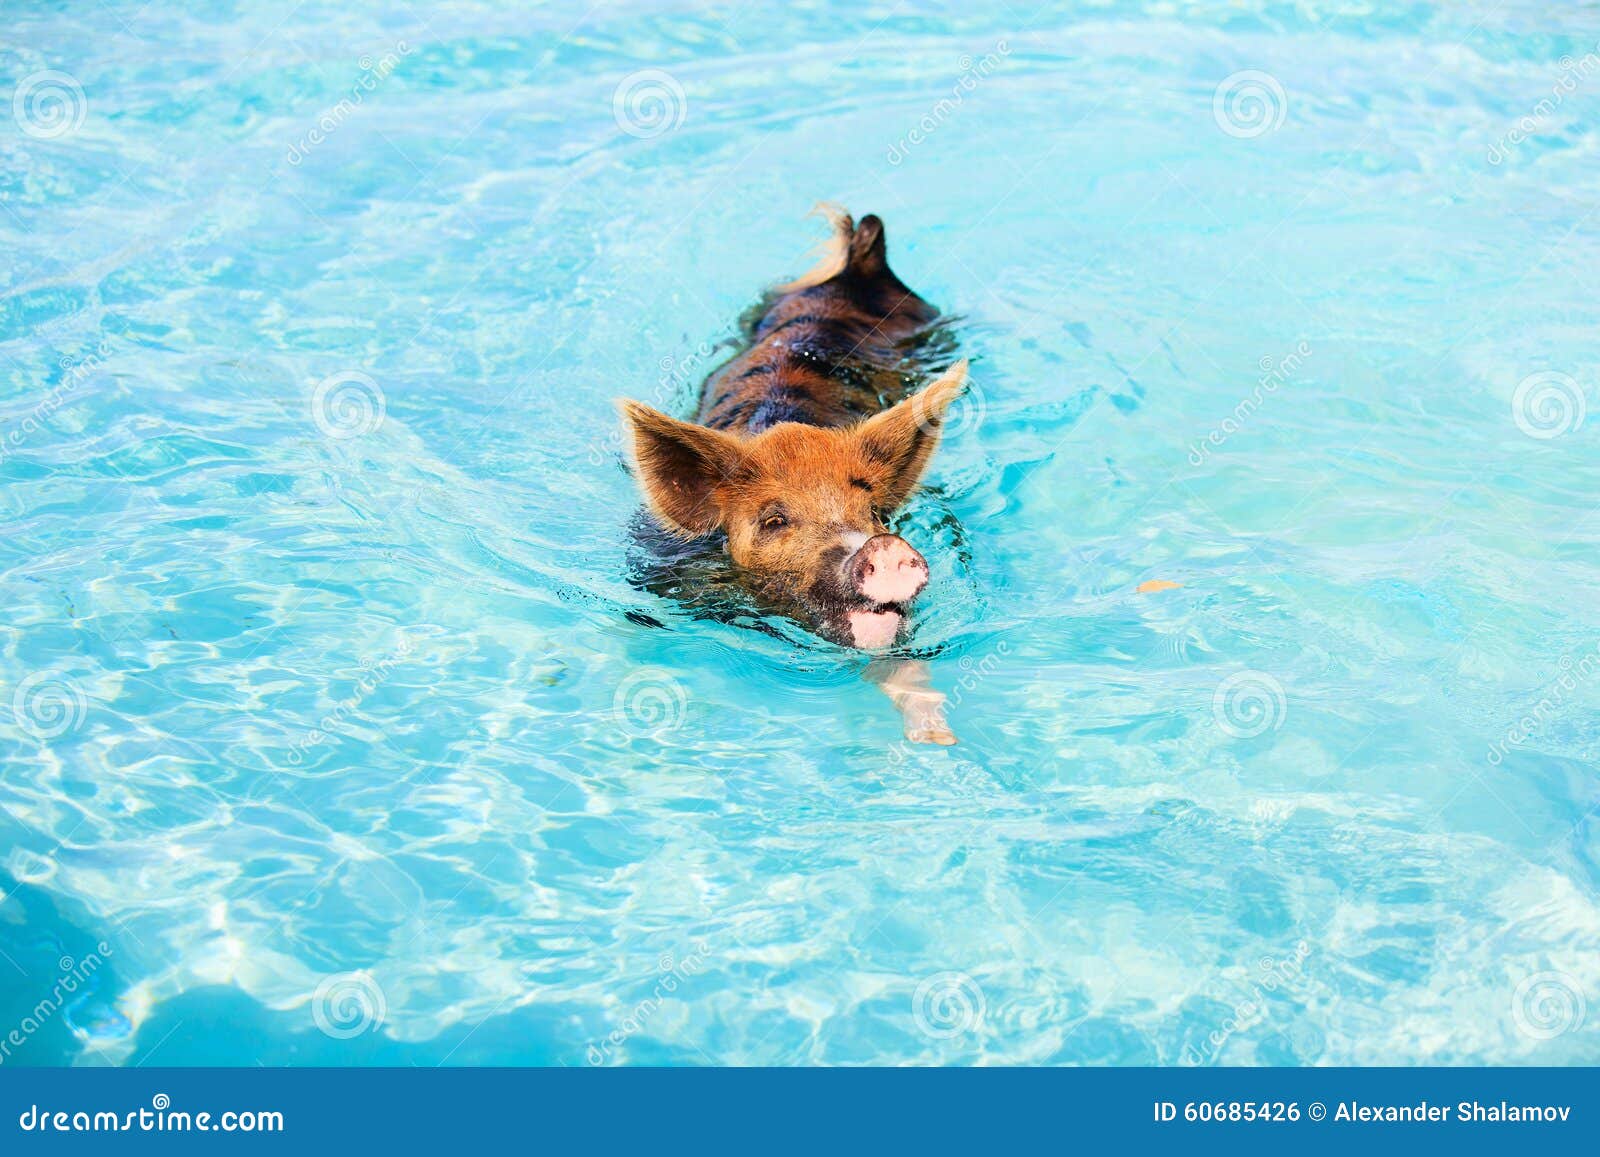 夏天蓝色的大海里游泳的宠物猪图片-千叶网